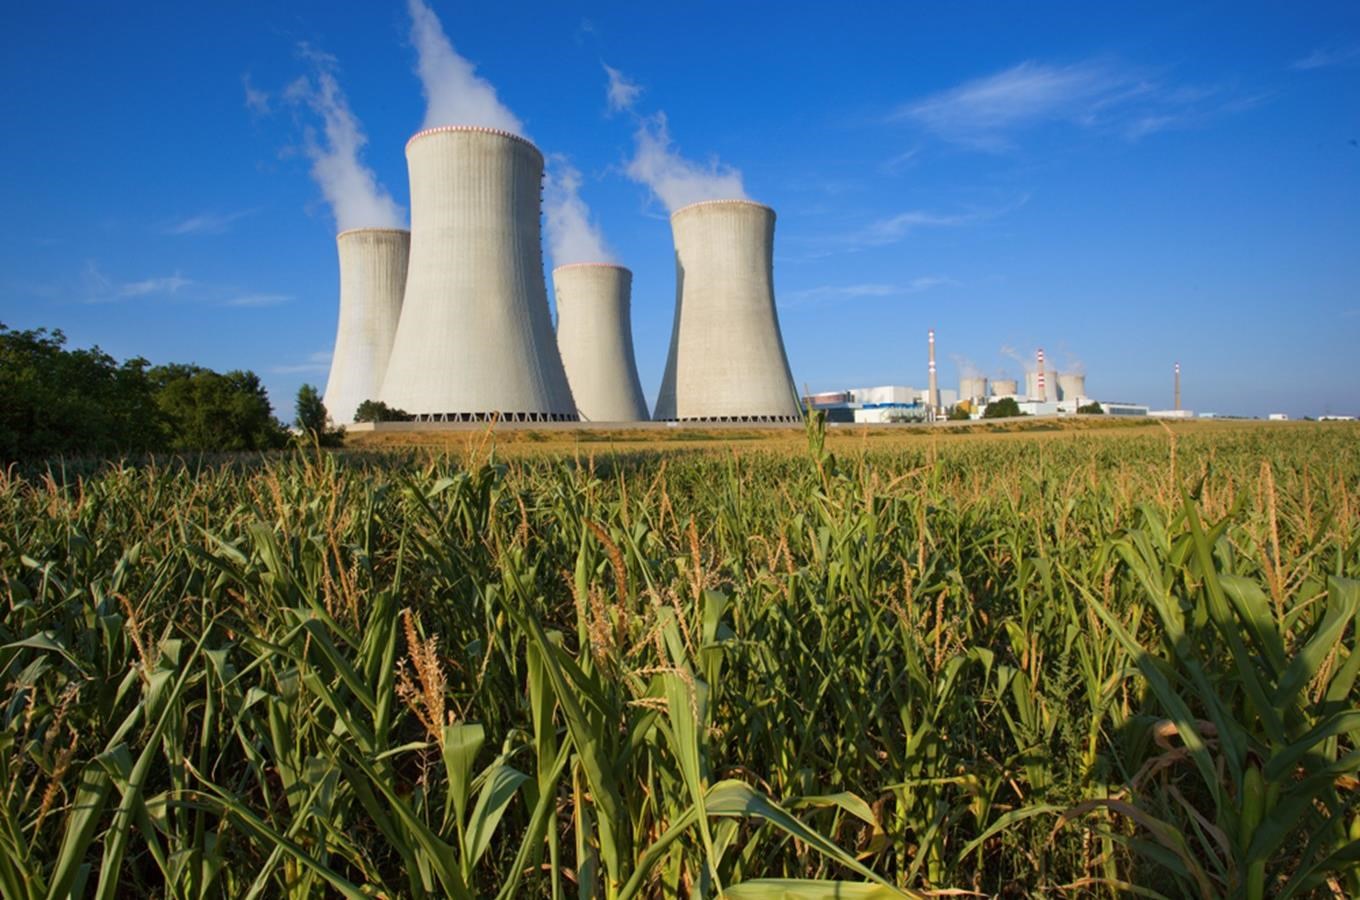 Jaderná elektrárna Dukovany – nejstarší jaderná elektrárna v České republice